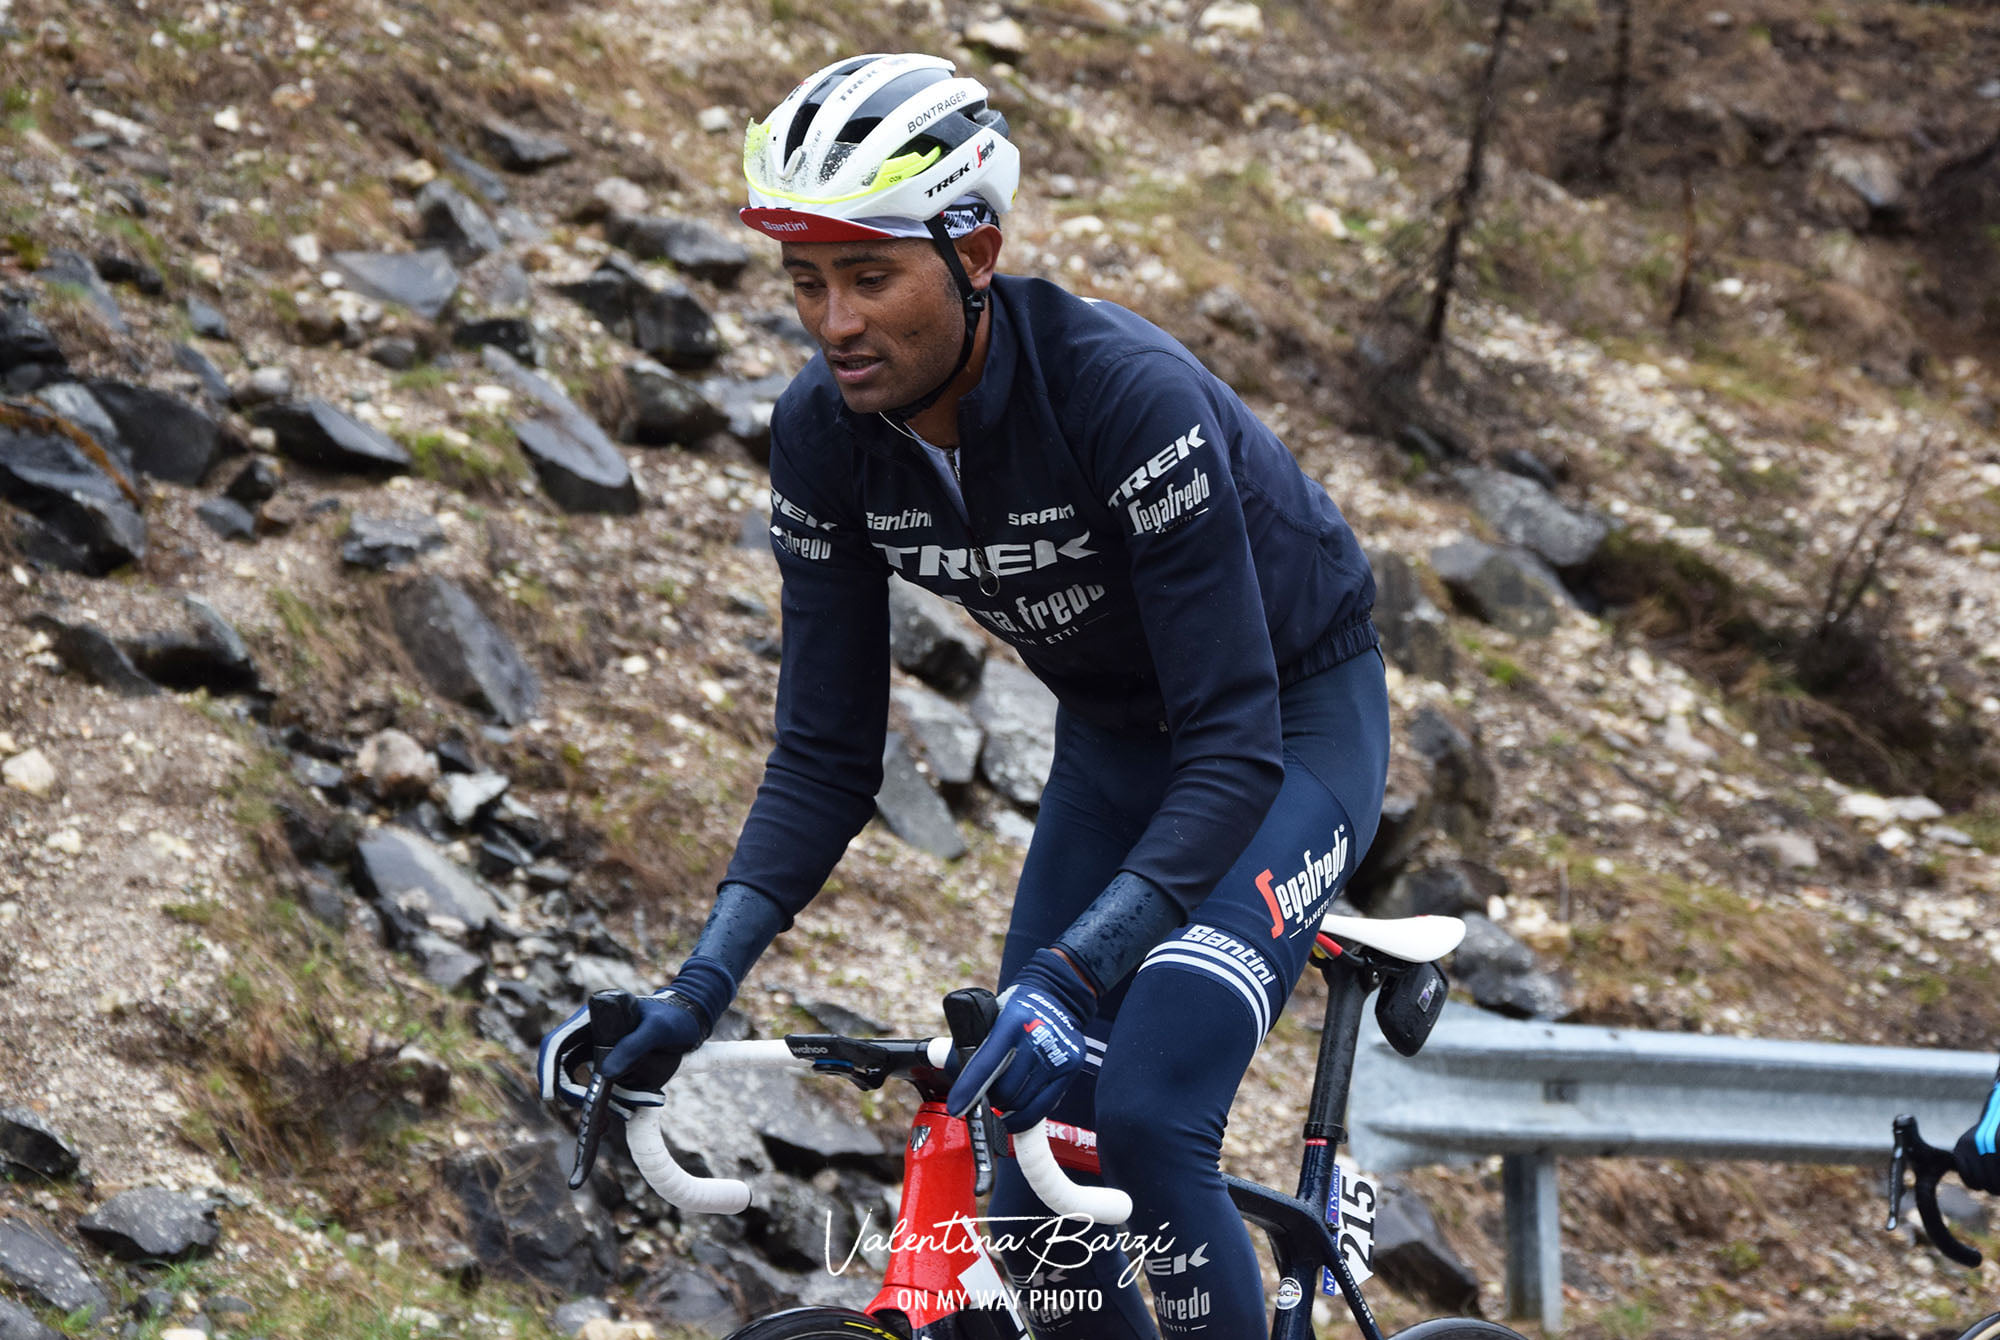 L'équipe UCI World-Tour Lidl-Trek a prolongé le contrat du coureur Amanuel Ghebreigzabhier pour une durée d'un an.